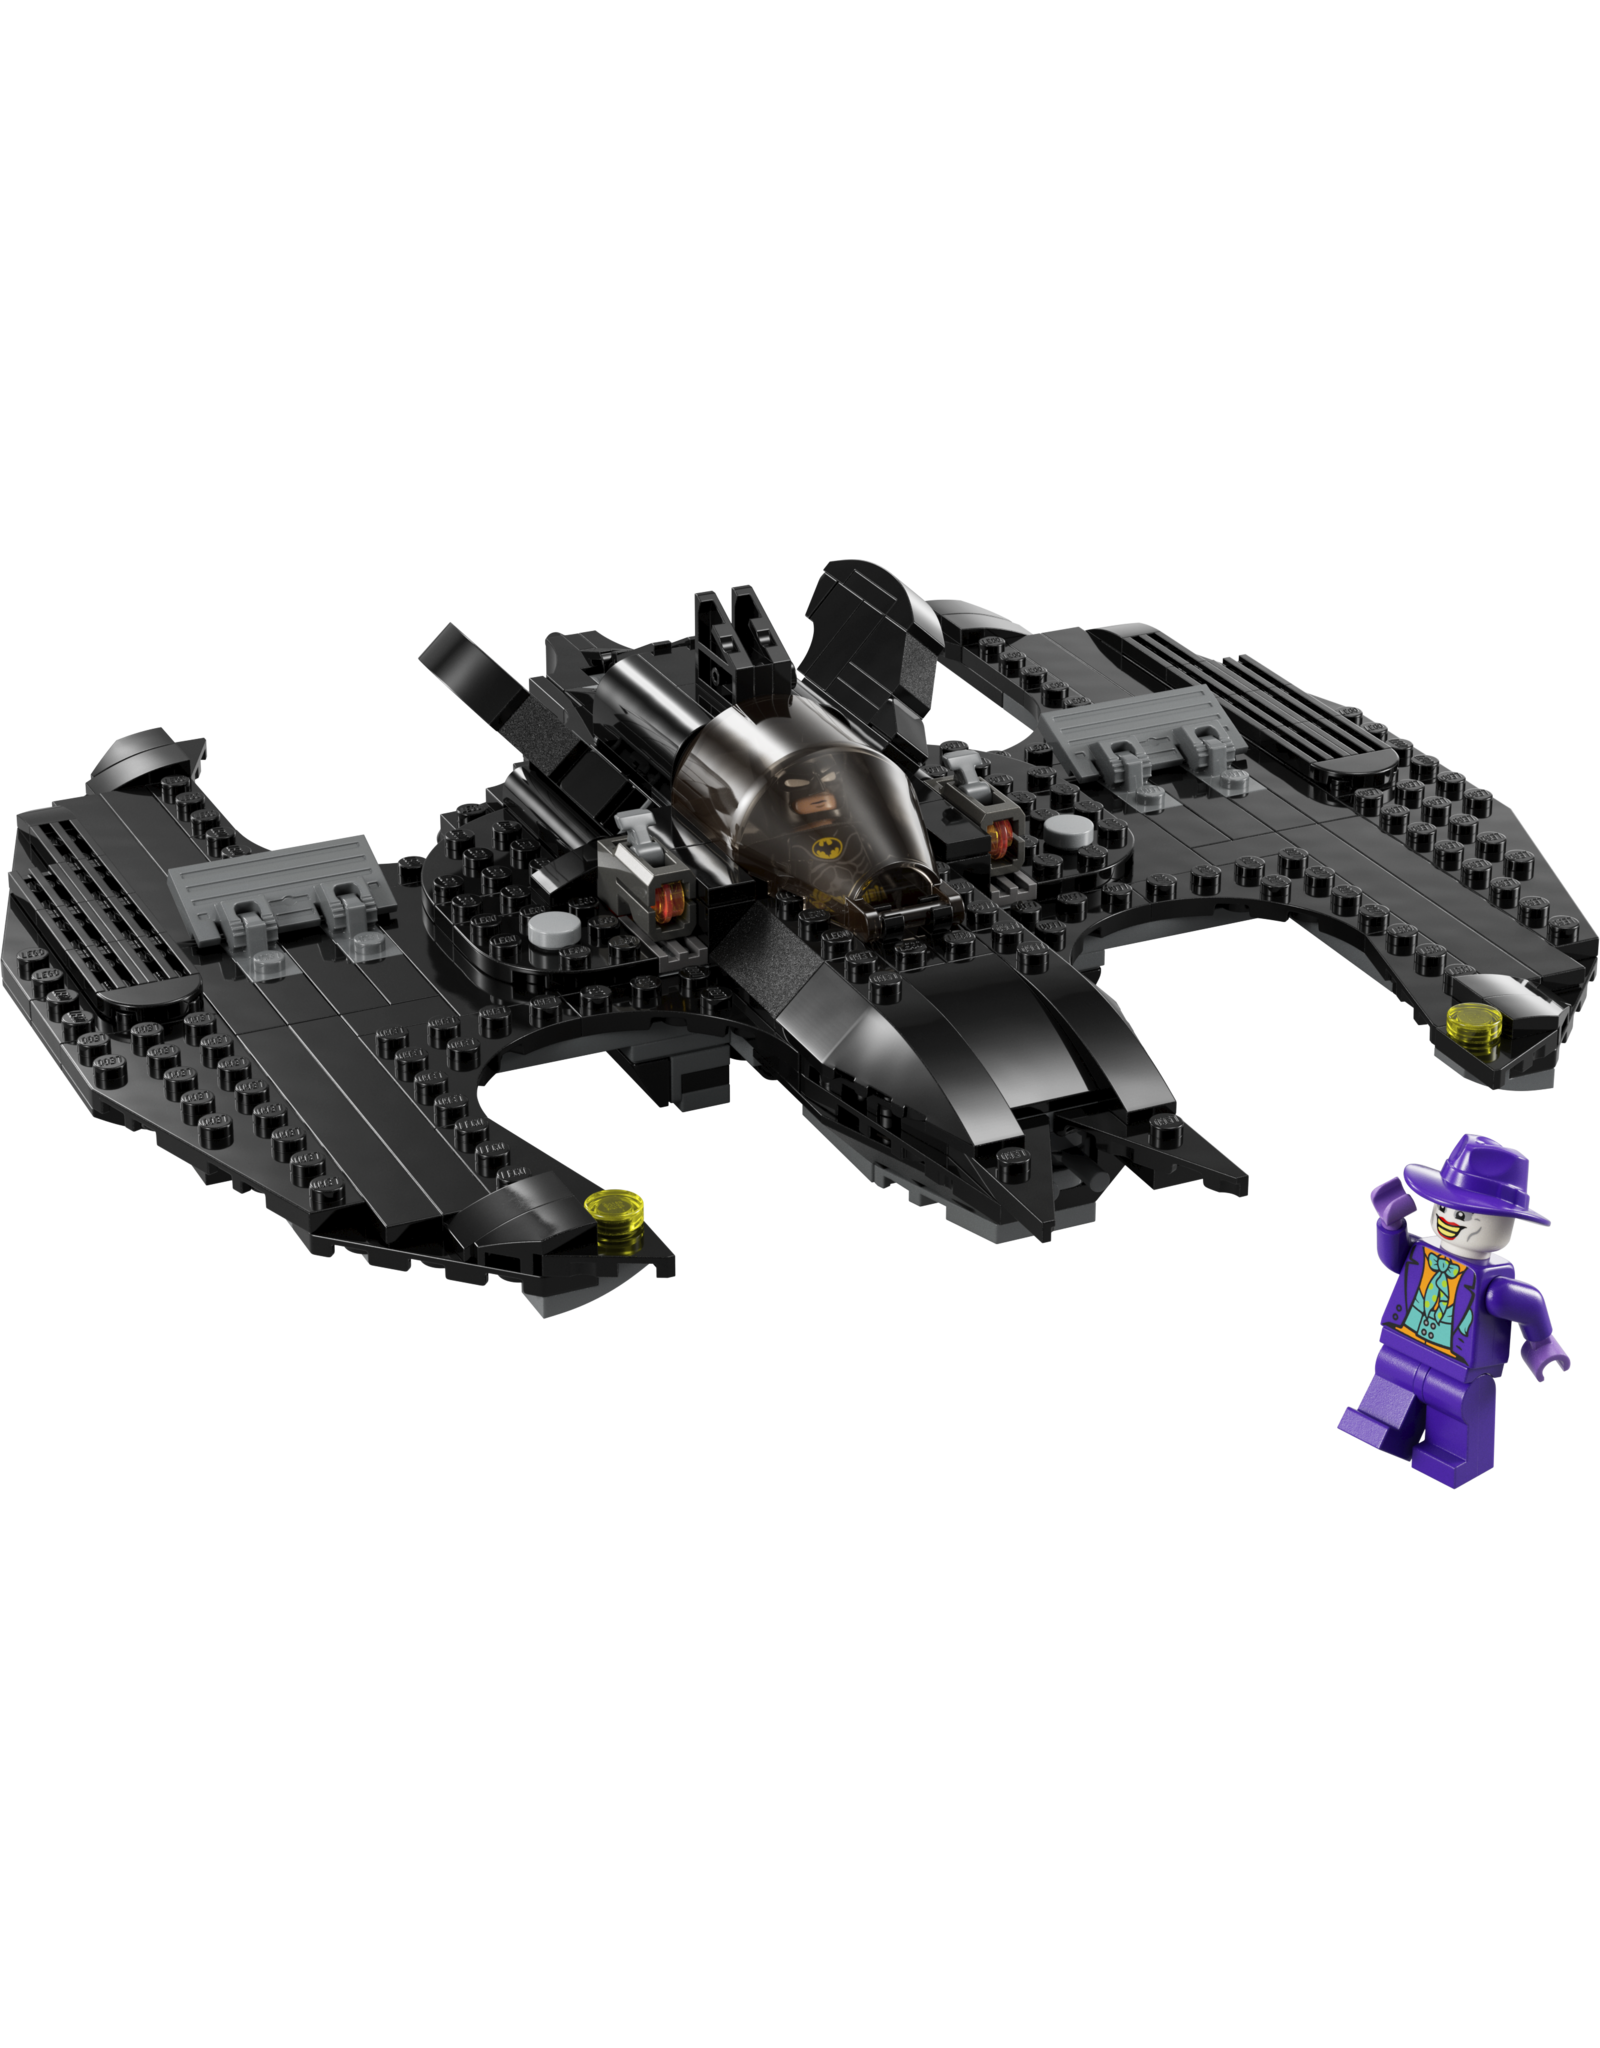 LEGO Super Heroes 76265 Batwing; Batman vs.The Joker